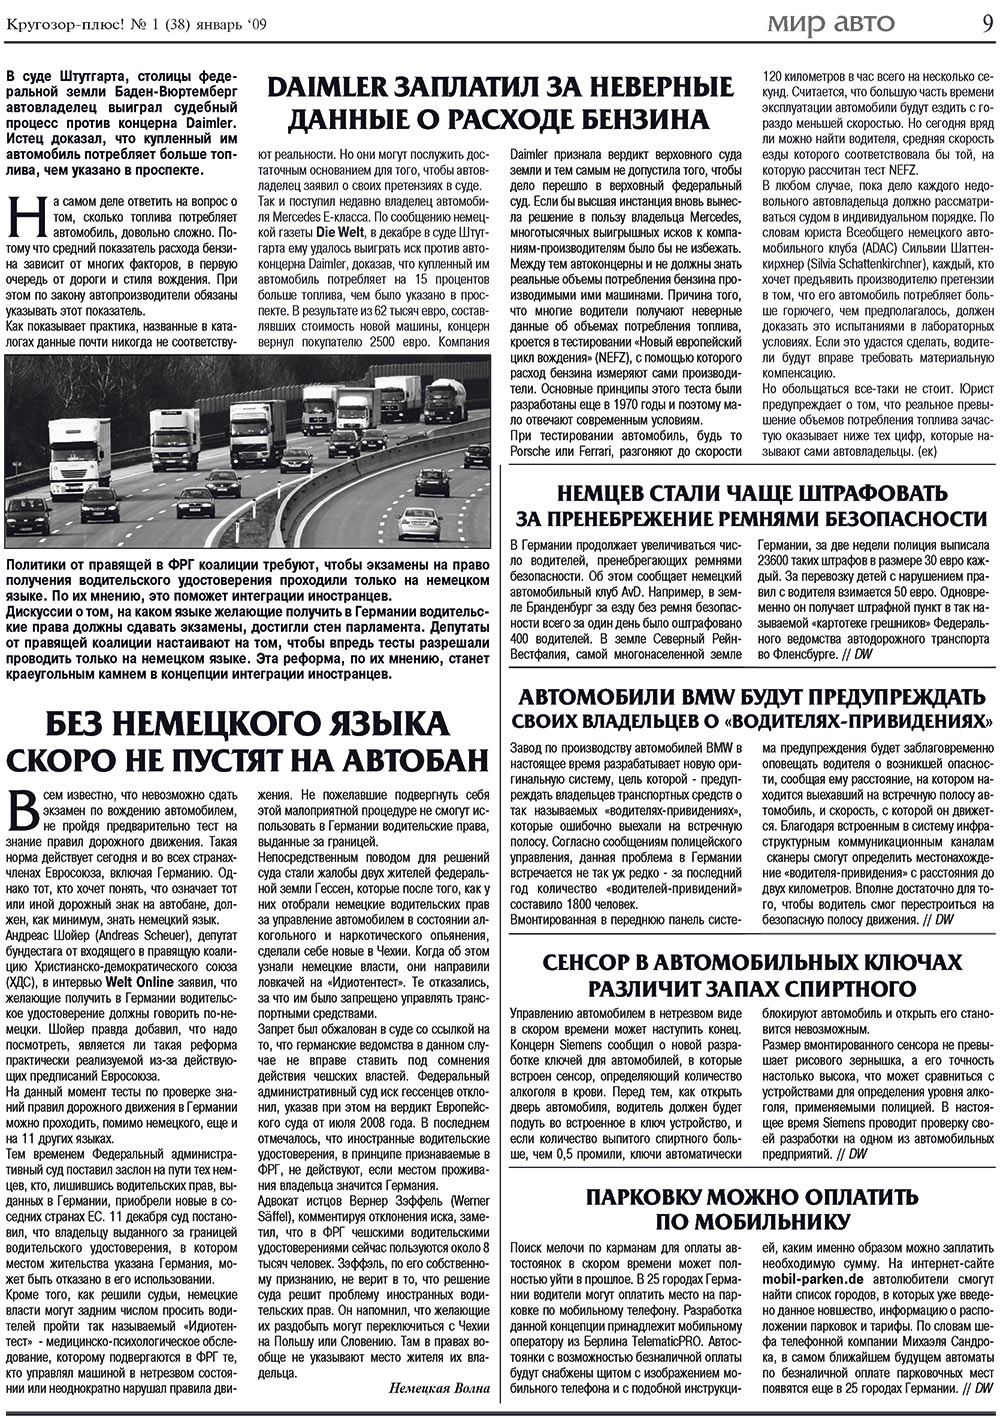 Кругозор плюс!, газета. 2009 №1 стр.9